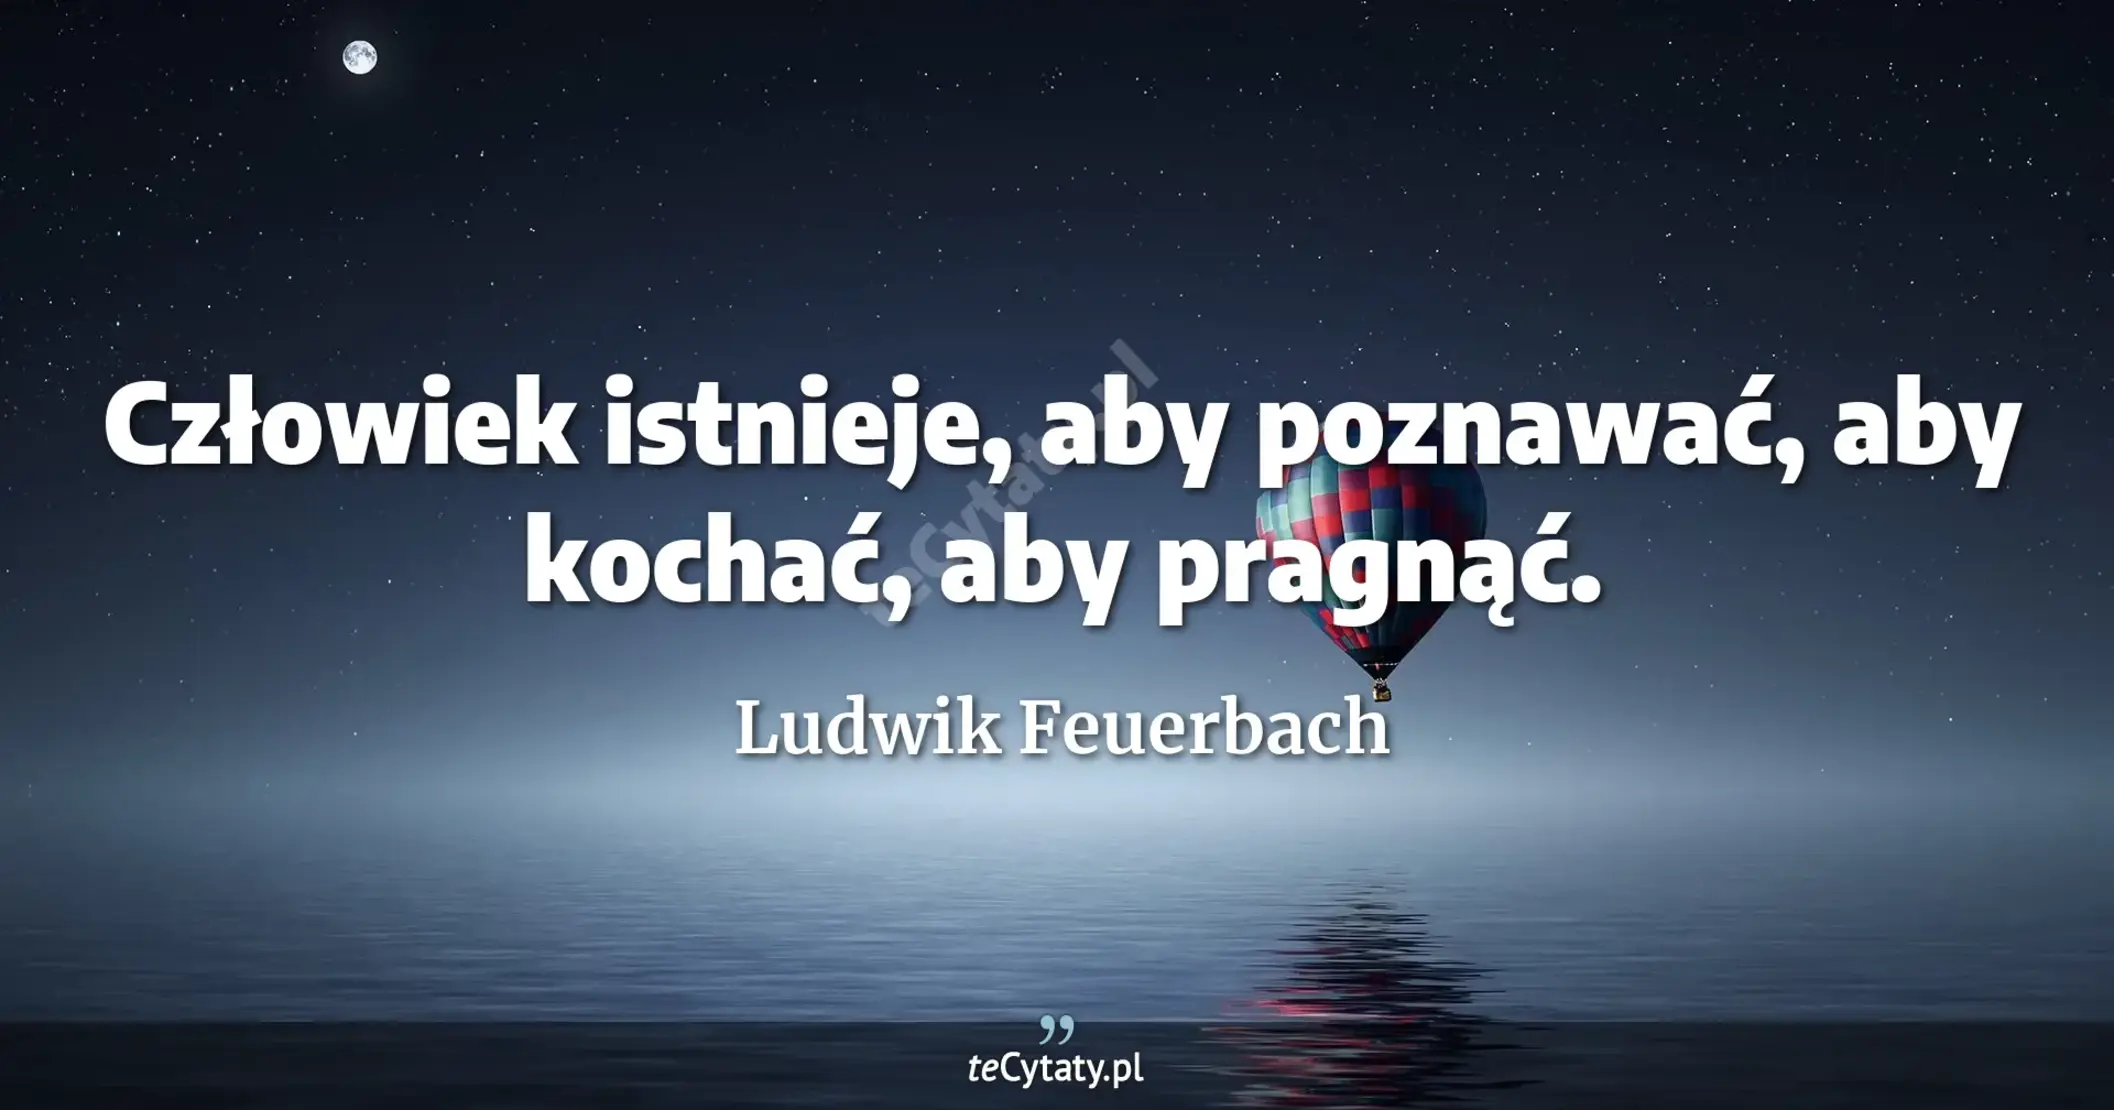 Człowiek istnieje, aby poznawać, aby kochać, aby pragnąć. - Ludwik Feuerbach